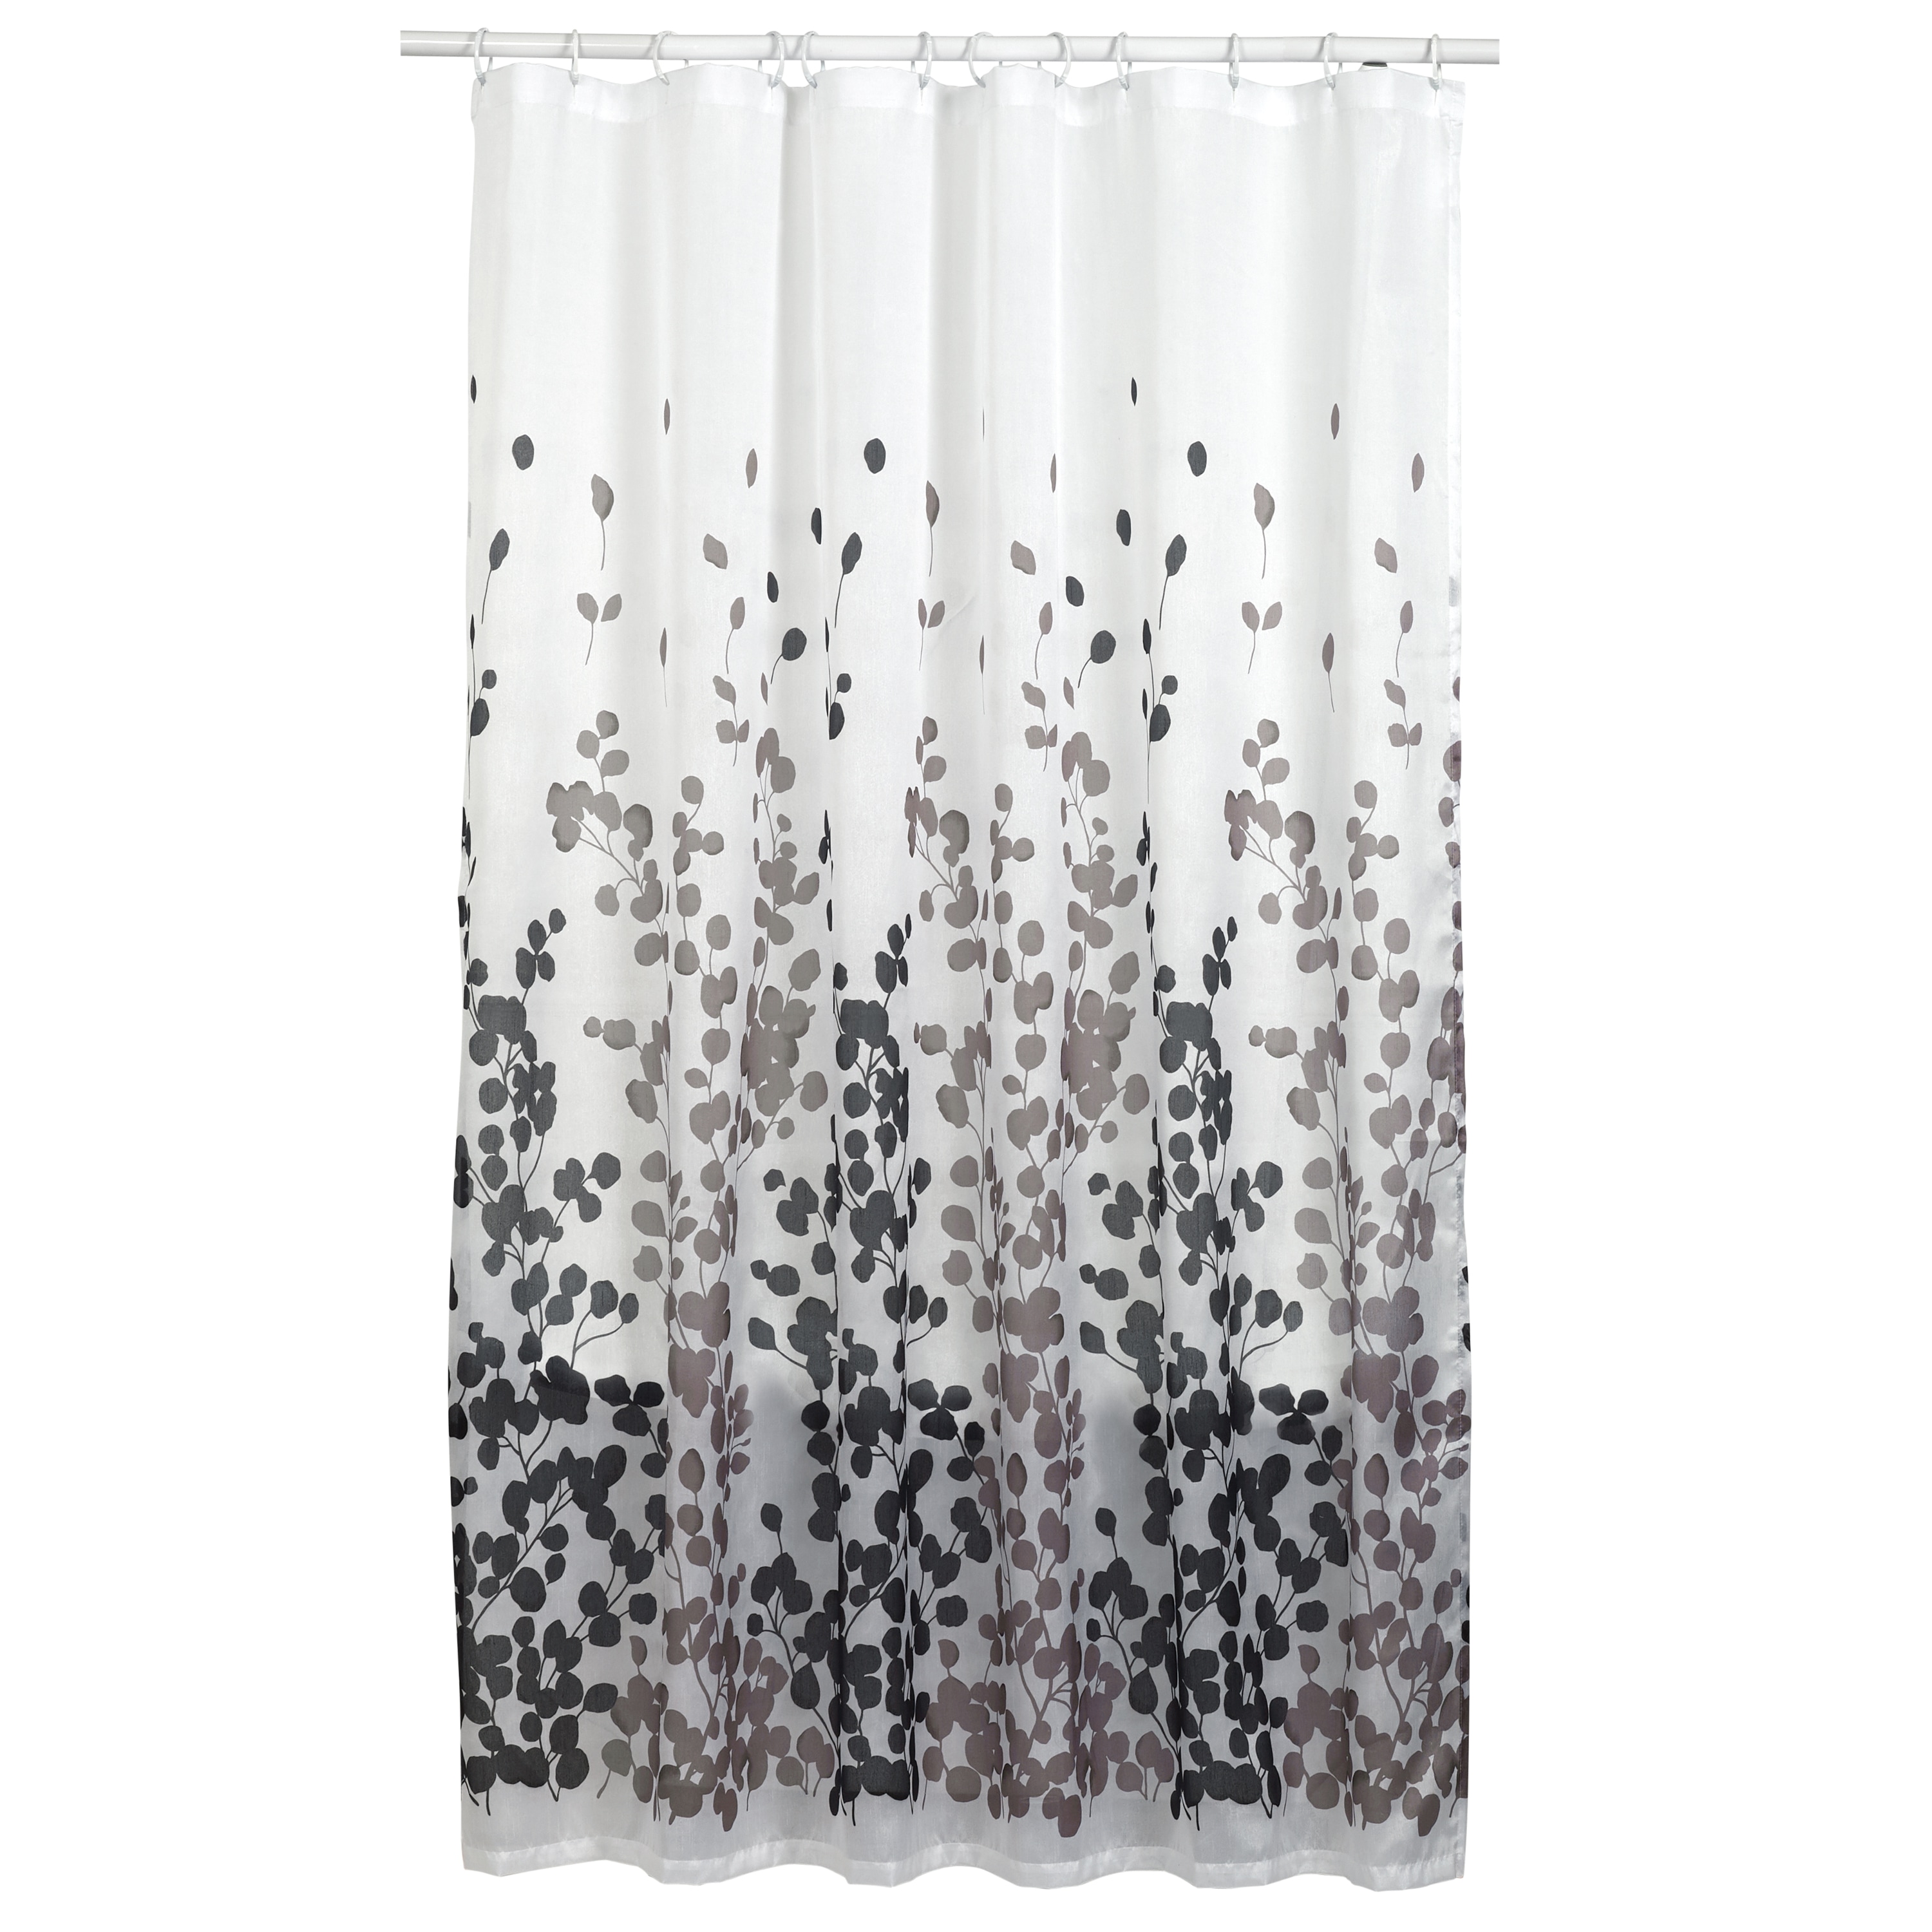 Shower Curtains 70 x 84 from DiaNoche Designs by Brazen Design Studio -  Invidia 